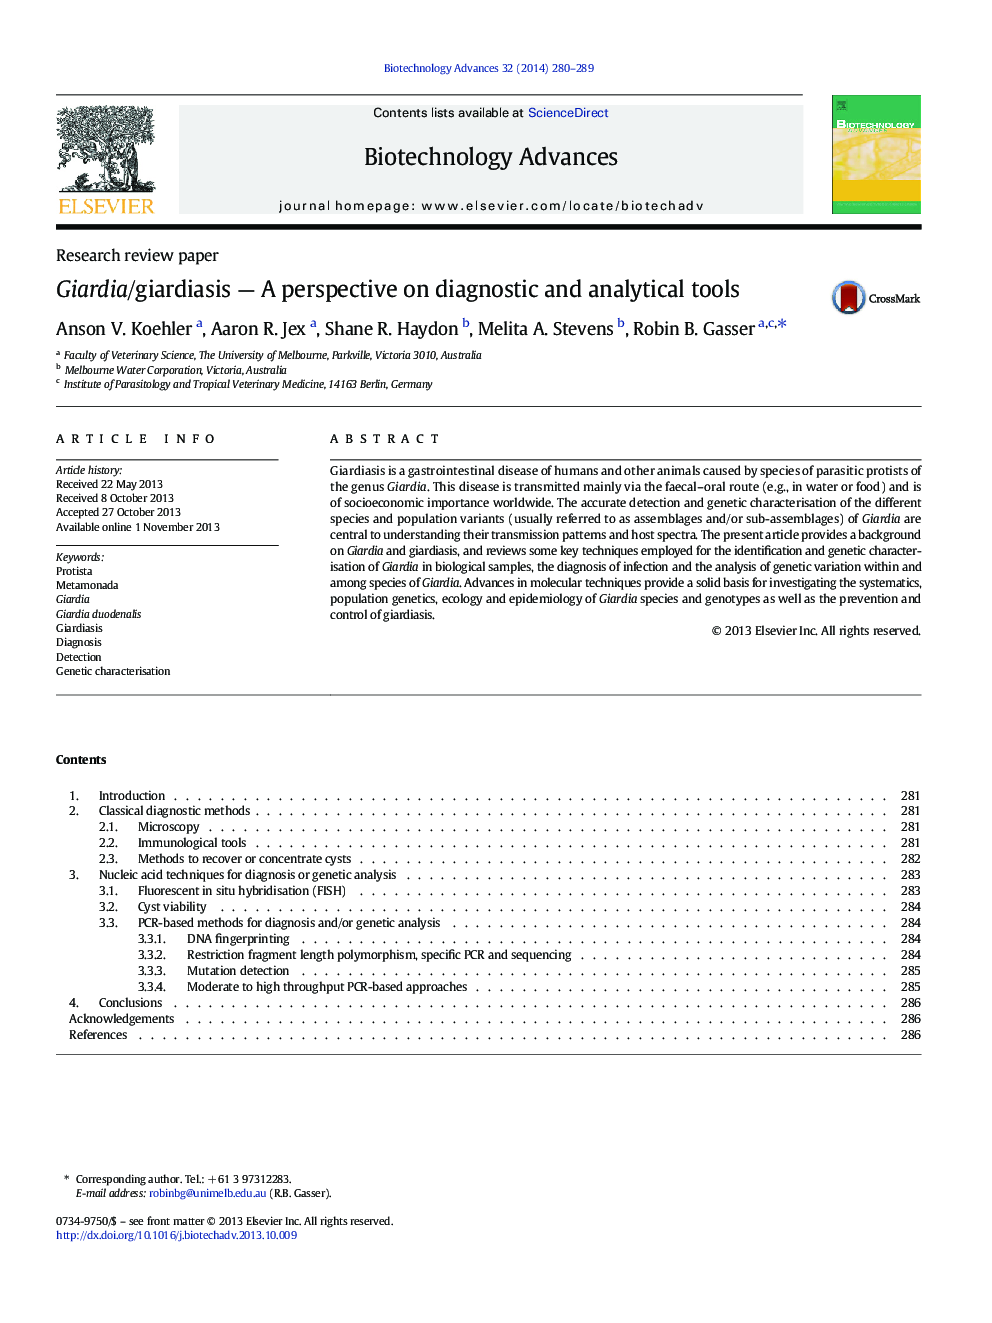 جیاردیا / جیاردیاسیس - چشم انداز ابزارهای تشخیصی و تحلیلی 